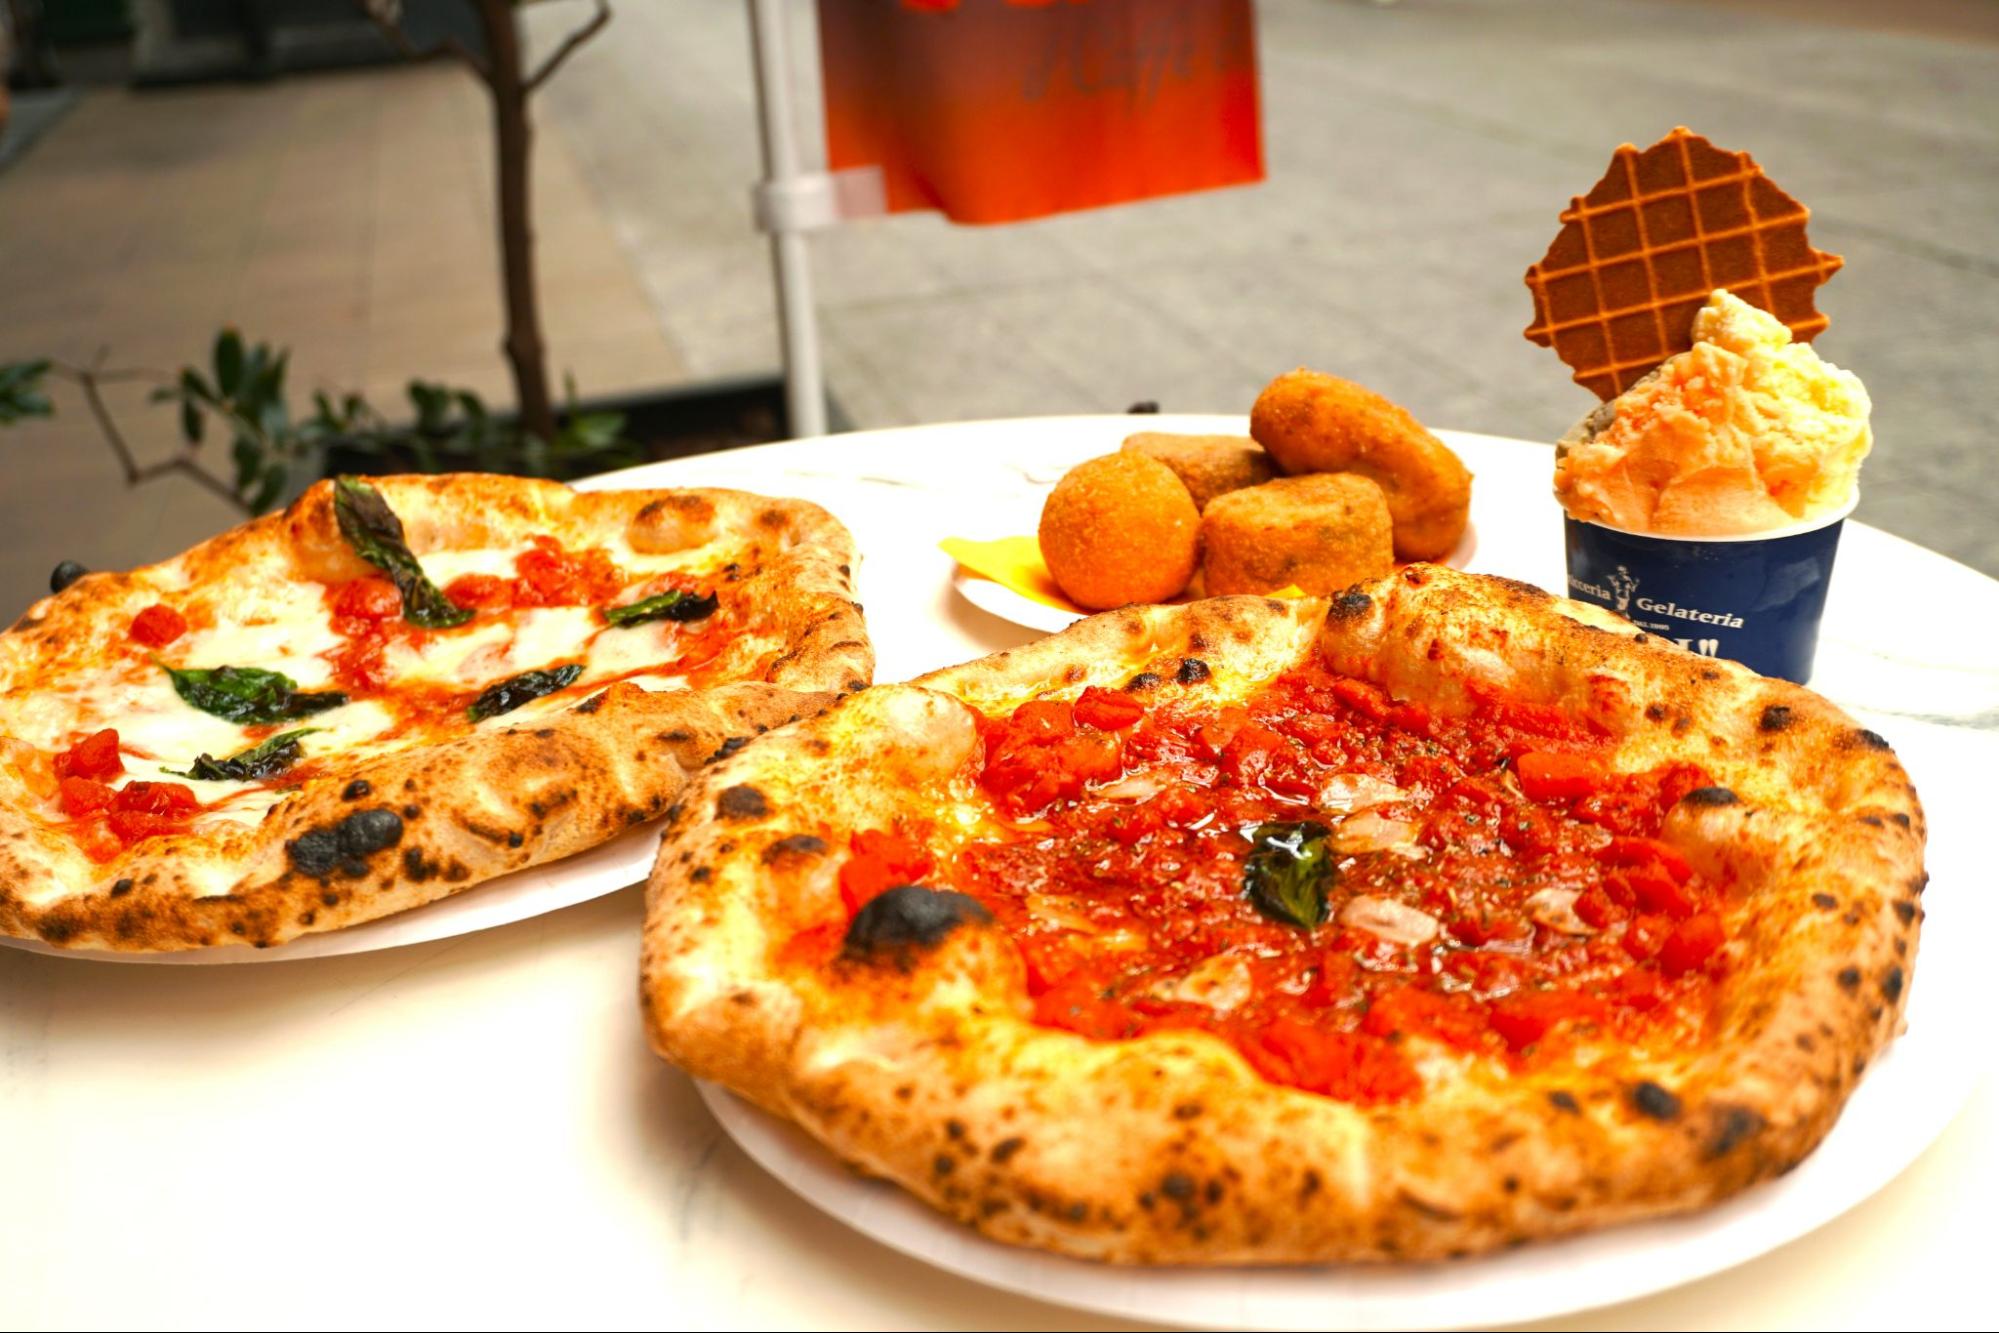 意大利那不勒斯的世界冠军制作的考究的味道“solo pizza napoleta nada picolo”